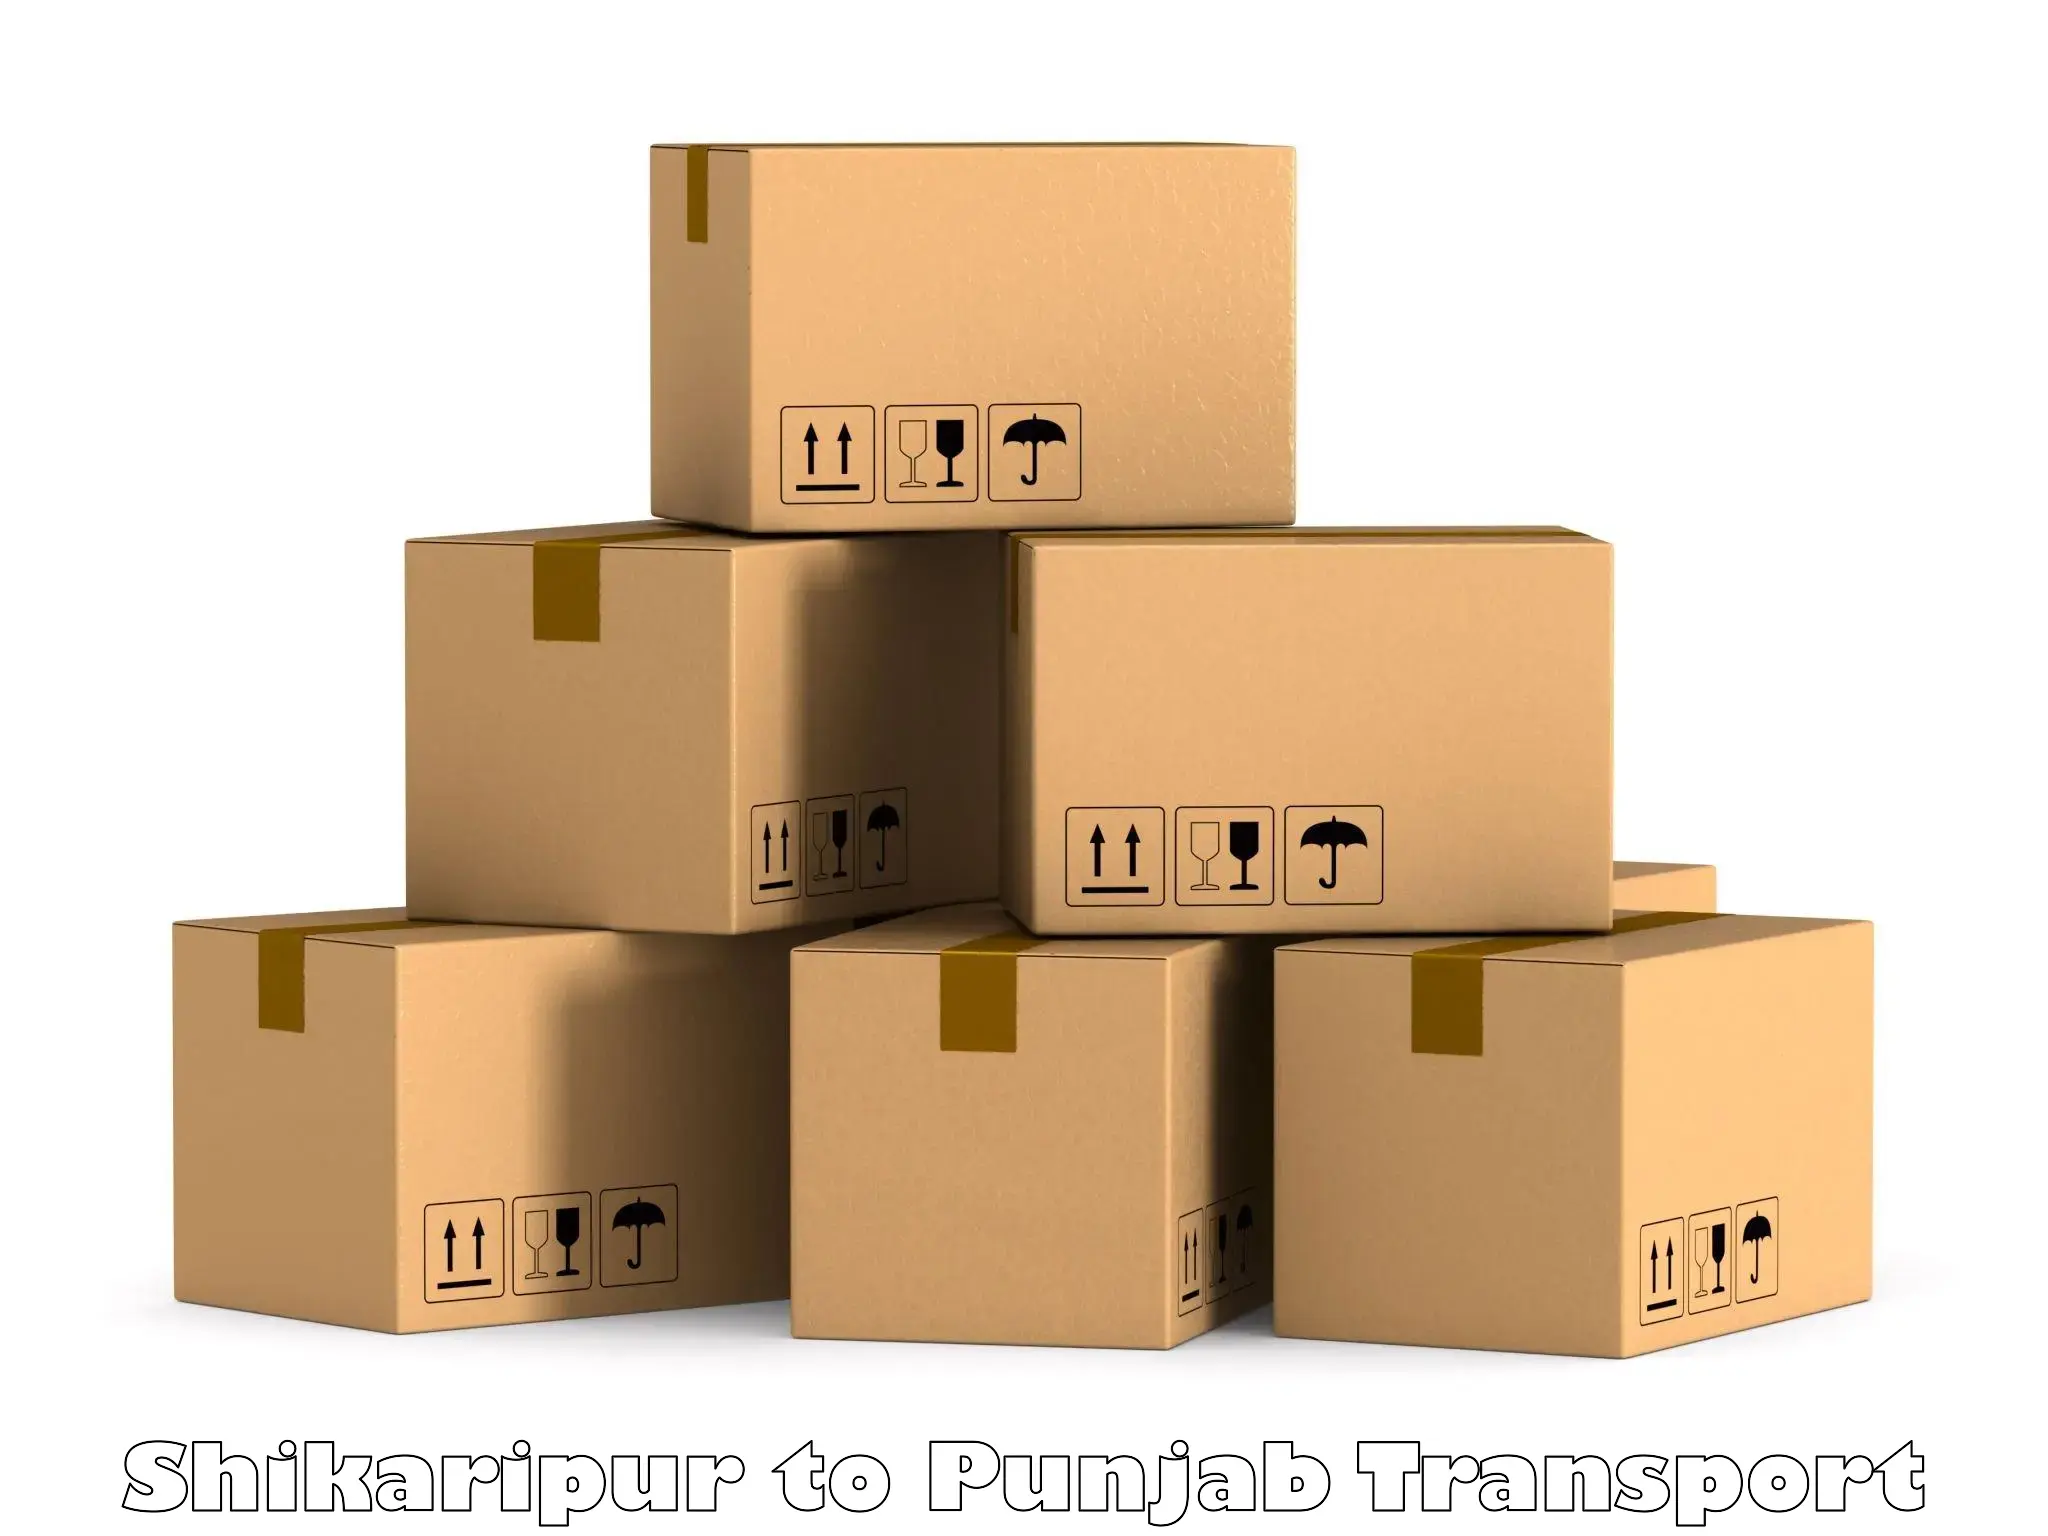 Daily parcel service transport Shikaripur to Bhadaur